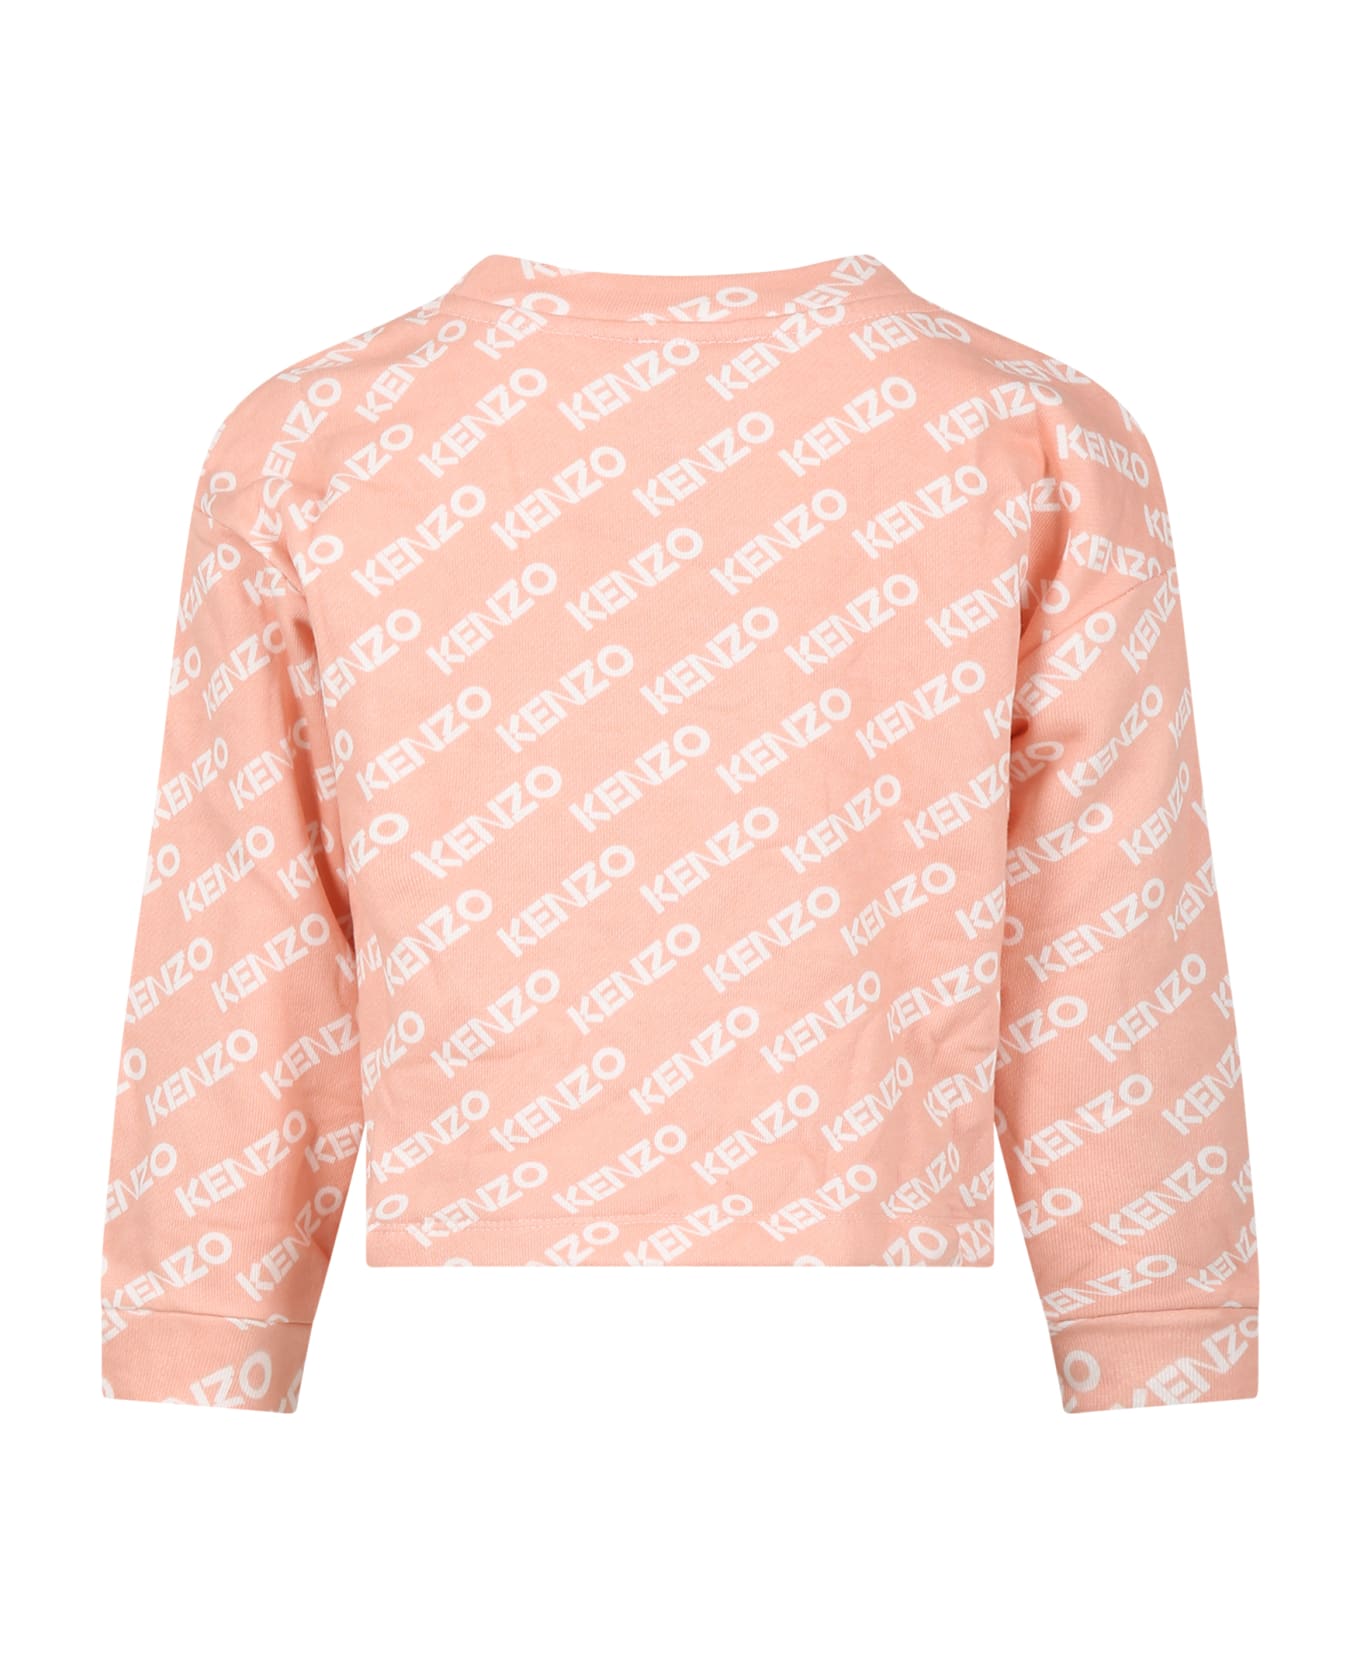 Kenzo Kids Pink Sweatshirt For Girl With Logo - Pink